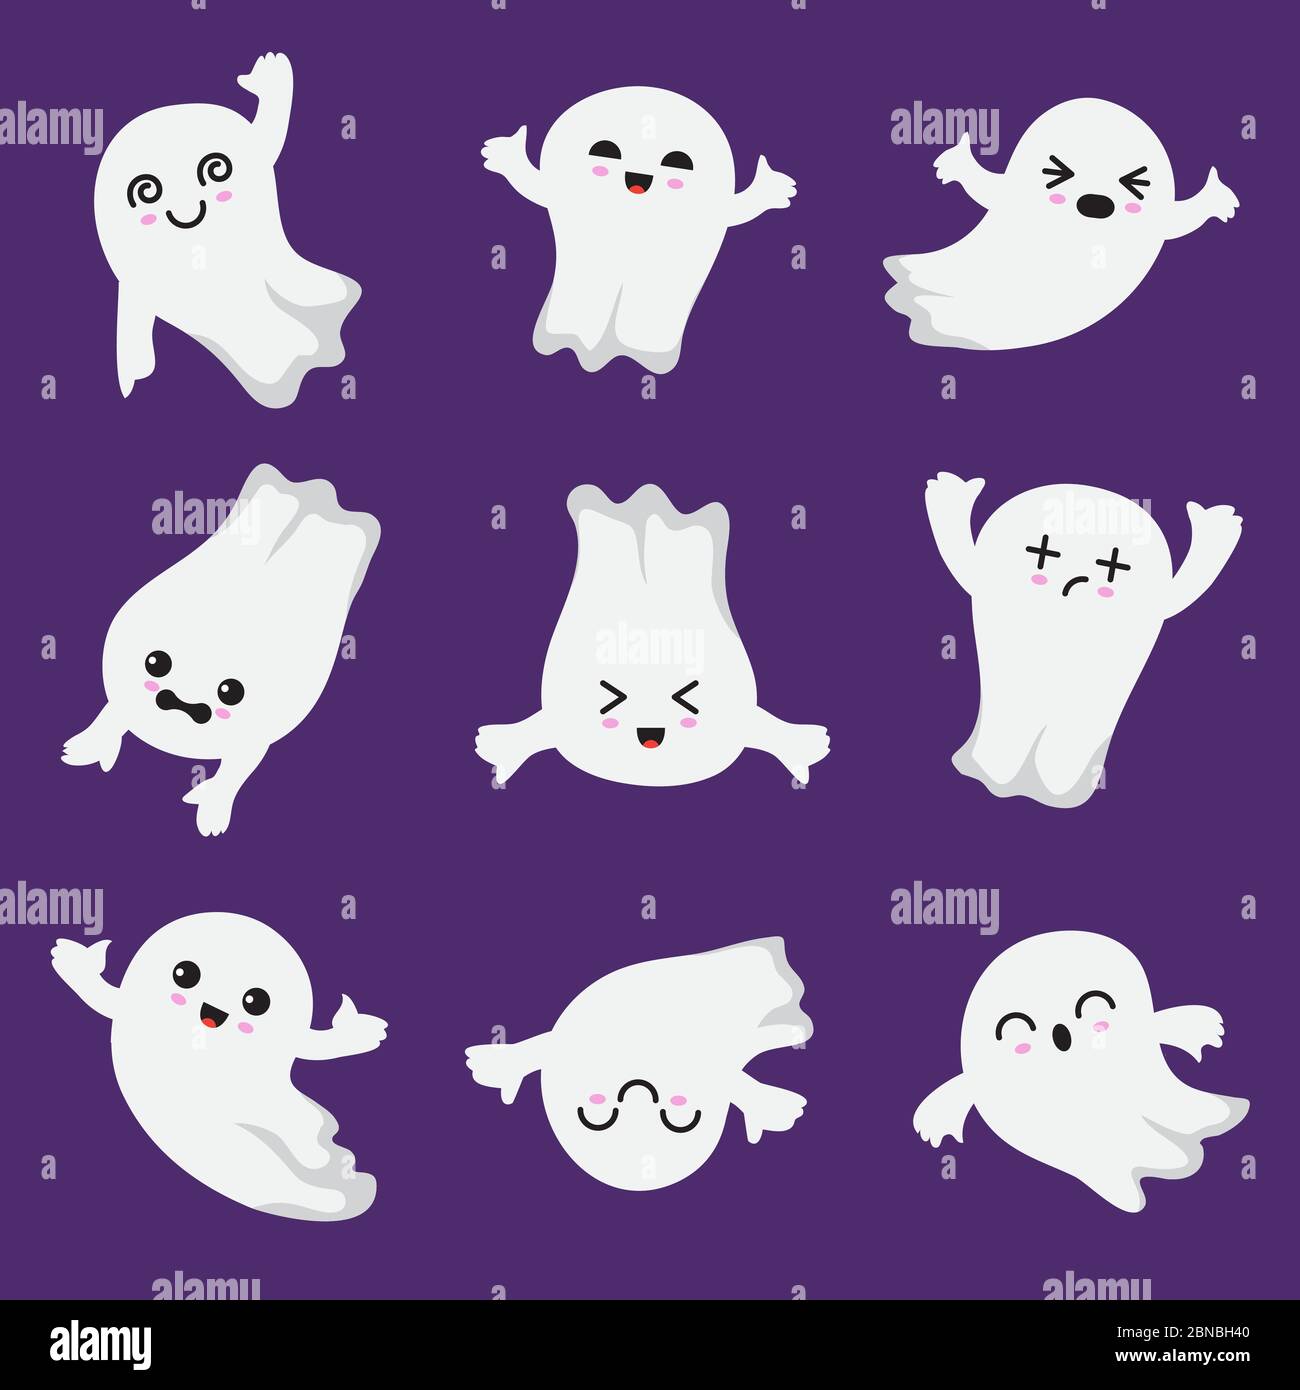 Lindo fantasma kawaii. Halloween personajes fantasmales y terroríficos. Ghost vector colección en estilo japonés. Ilustración de halloween fantasma se eleva, misteriosa mosca fantasmal Ilustración del Vector